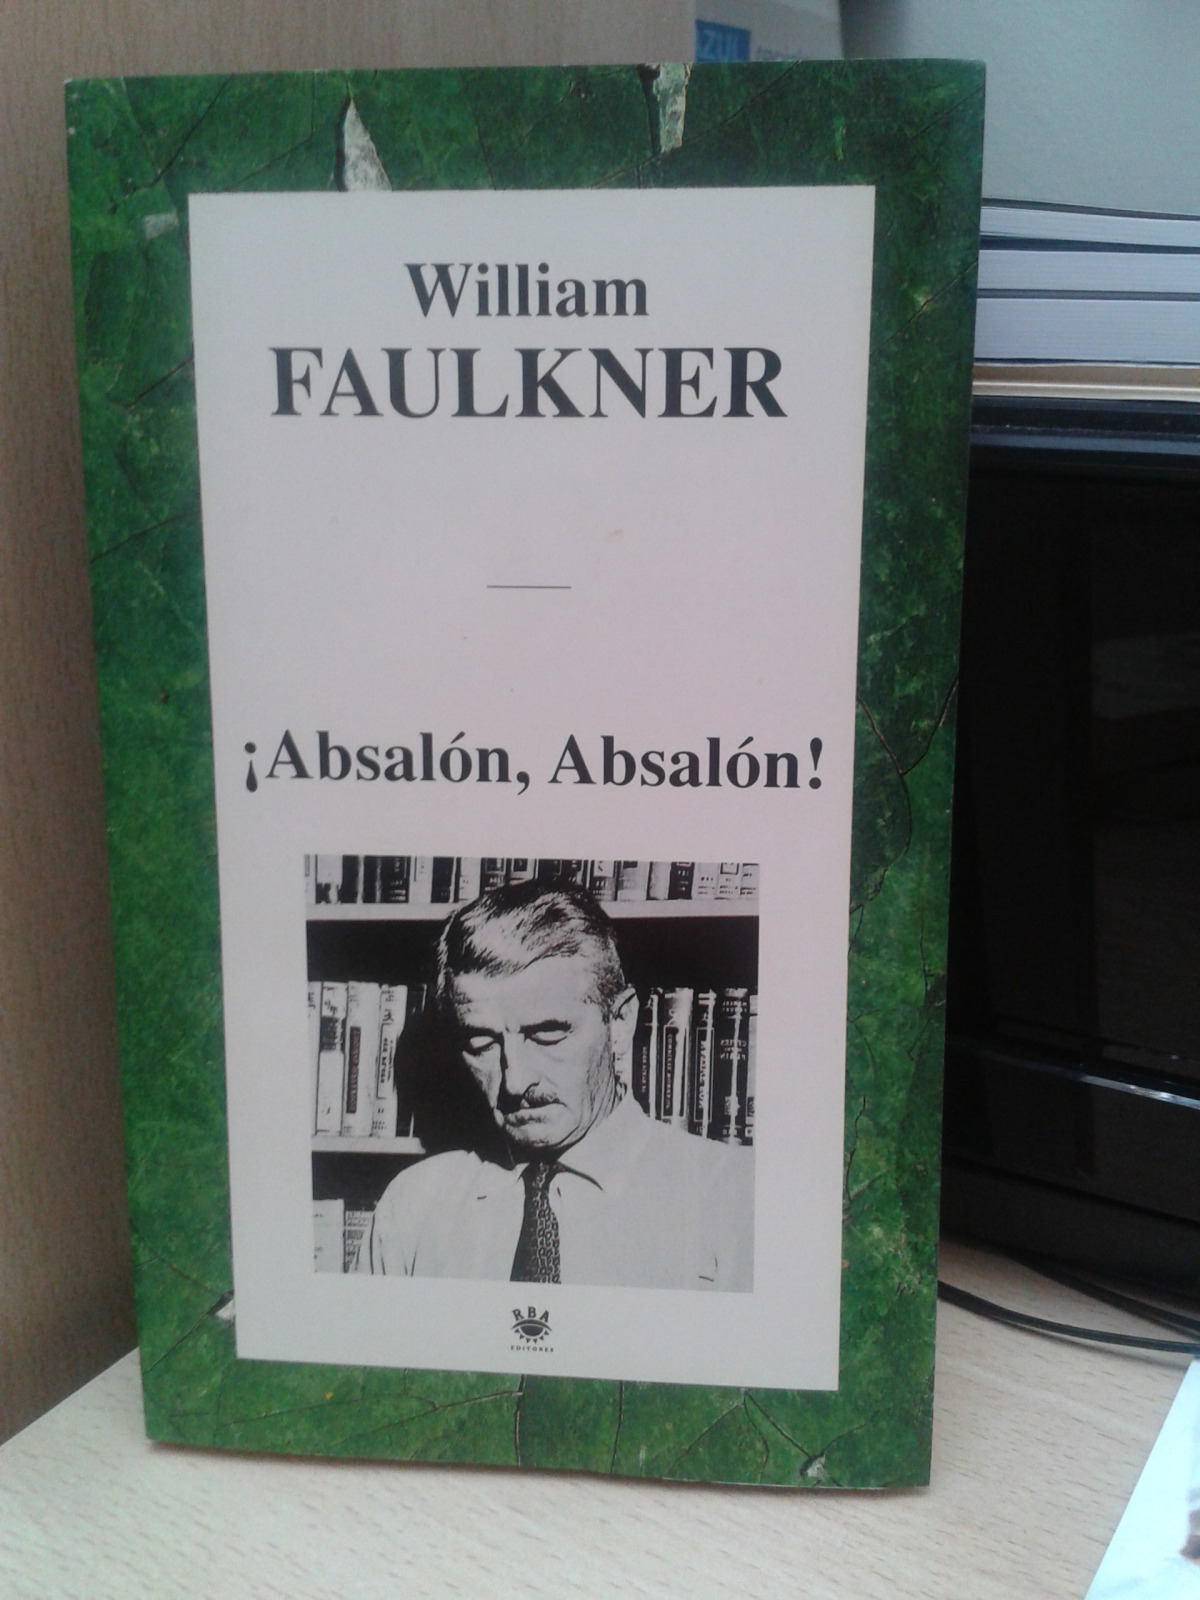 Absalon, absalon - Faulkner, William